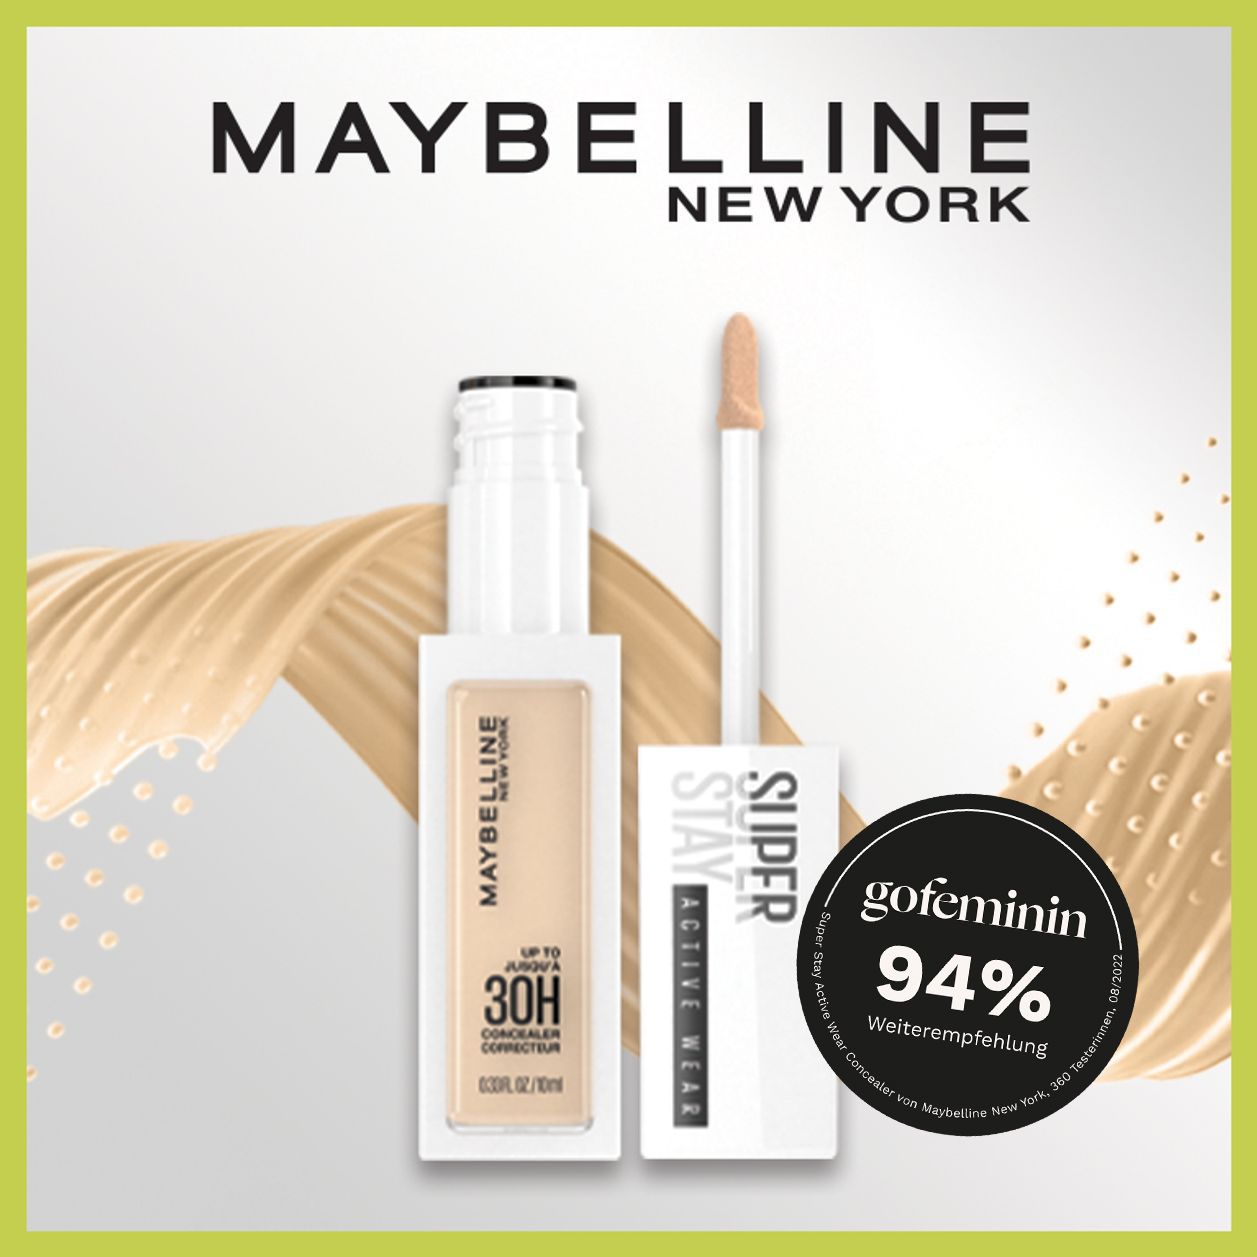 Mit satten 94 % Weiterempfehlung hat der Concealer von Maybelline New York im Test abgeschnitten.